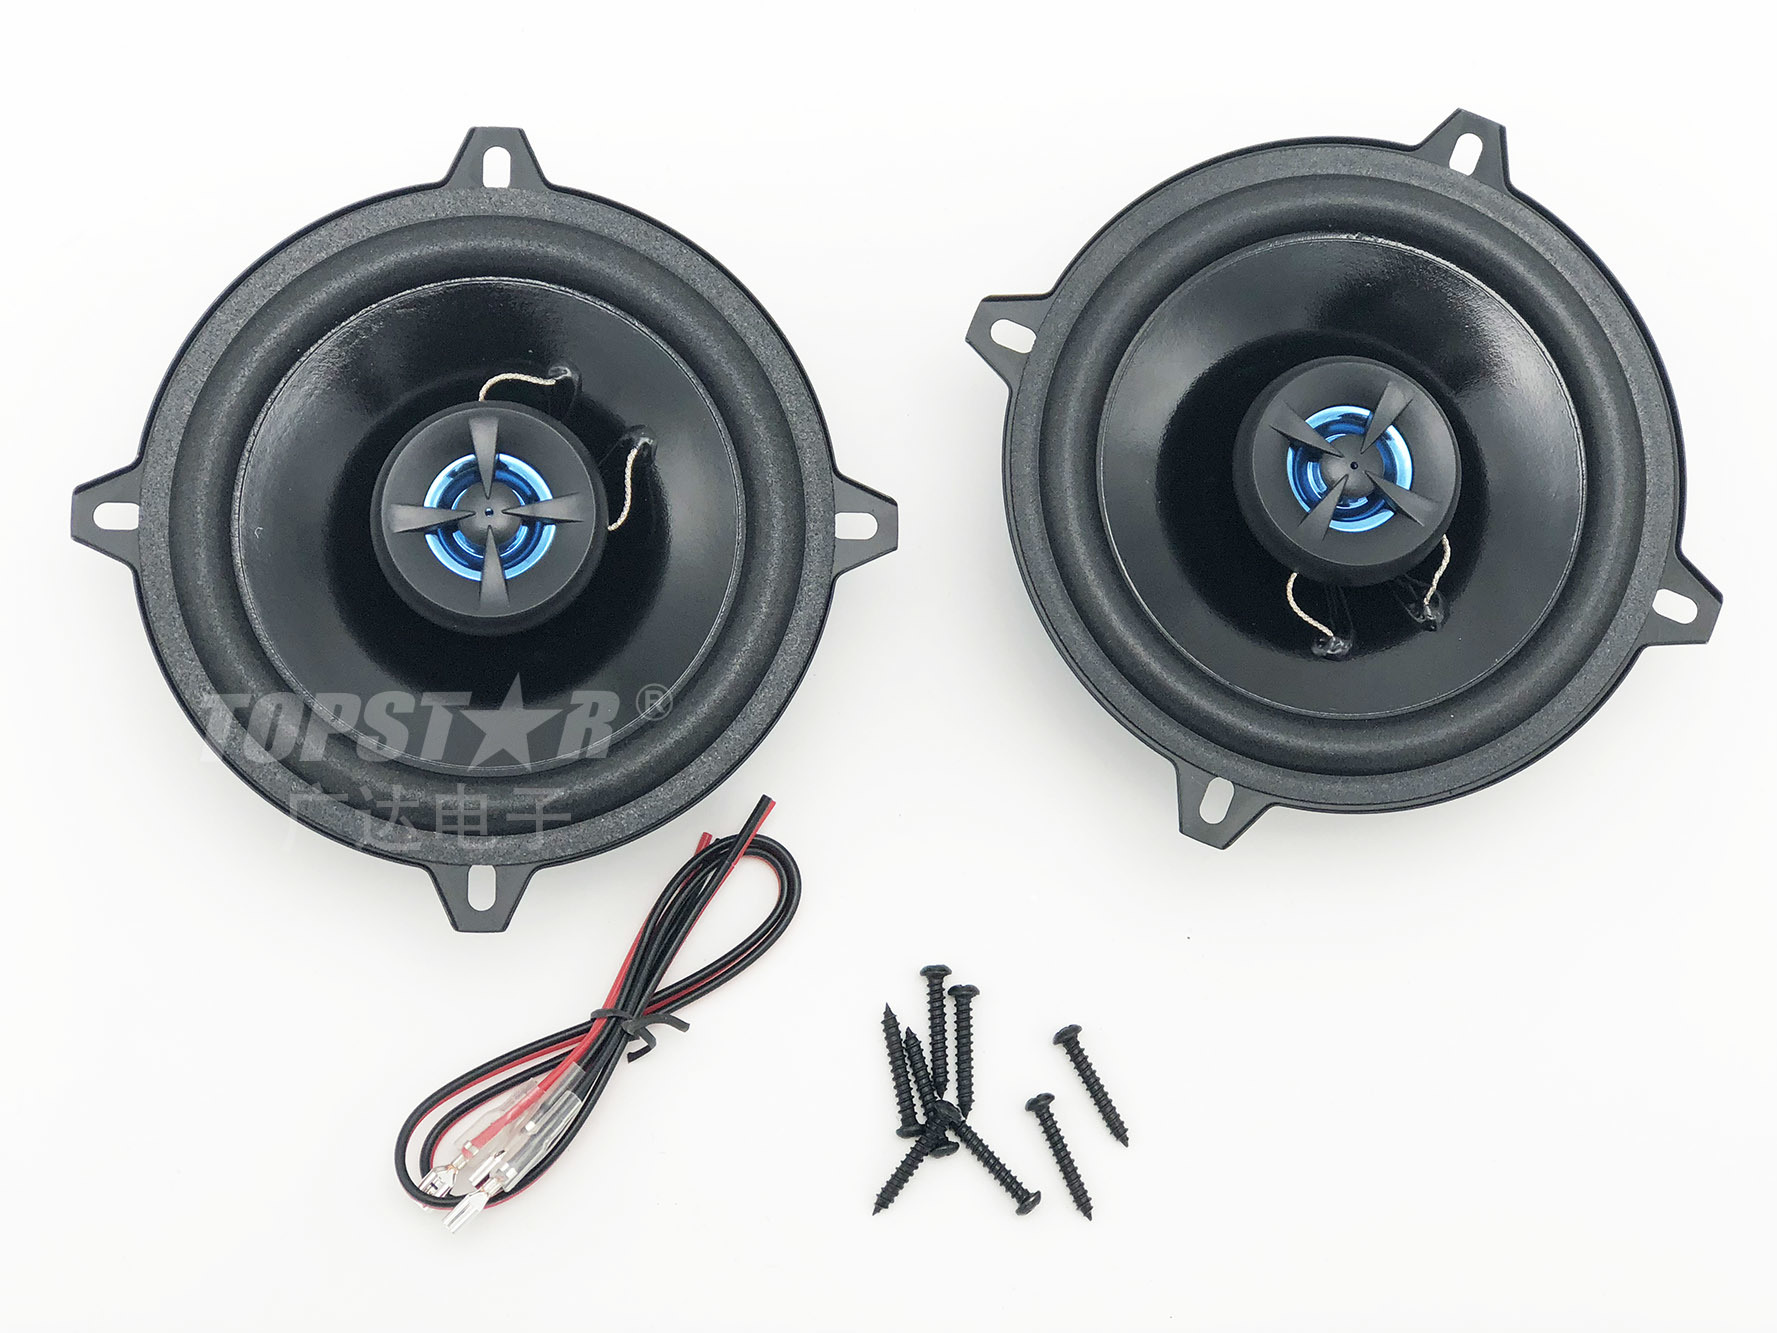 Speaker for Car Audio Speaker Active Speaker Stereo Speaker Good Quality Professional Car Speaker